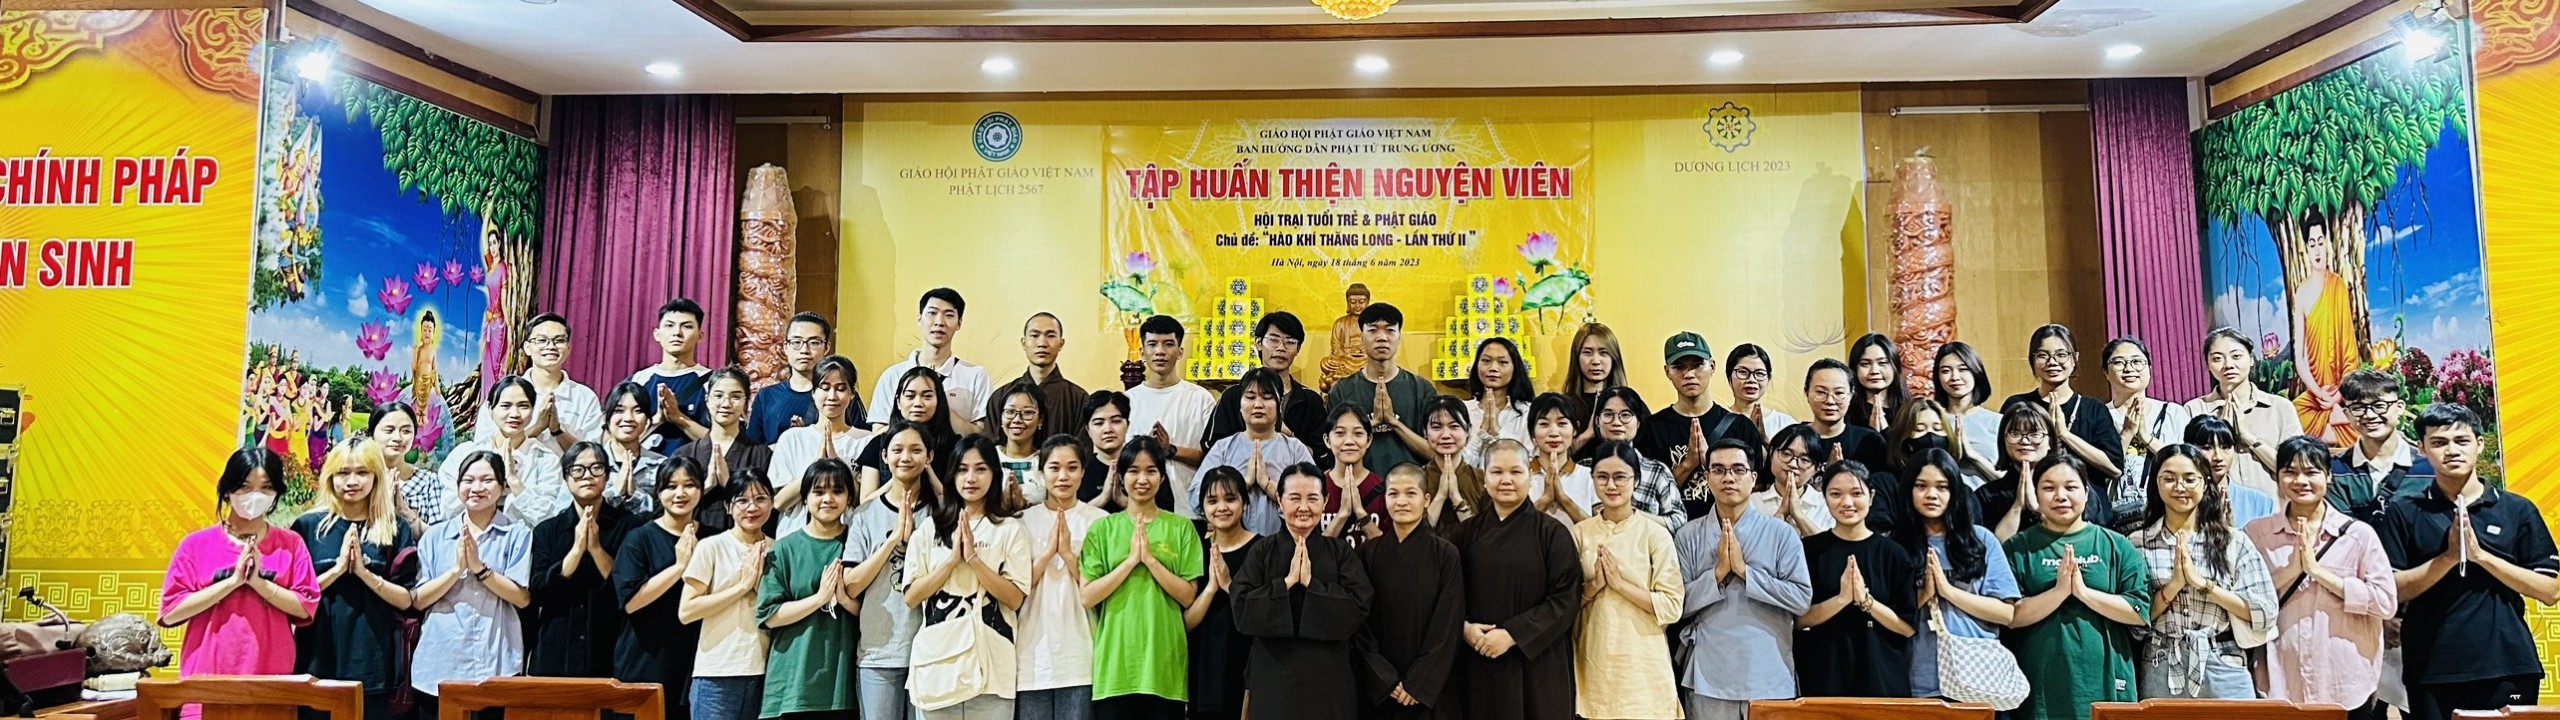 Hà Nội: Tập huấn thiện nguyện viên Hội trại Phật giáo & tuổi trẻ